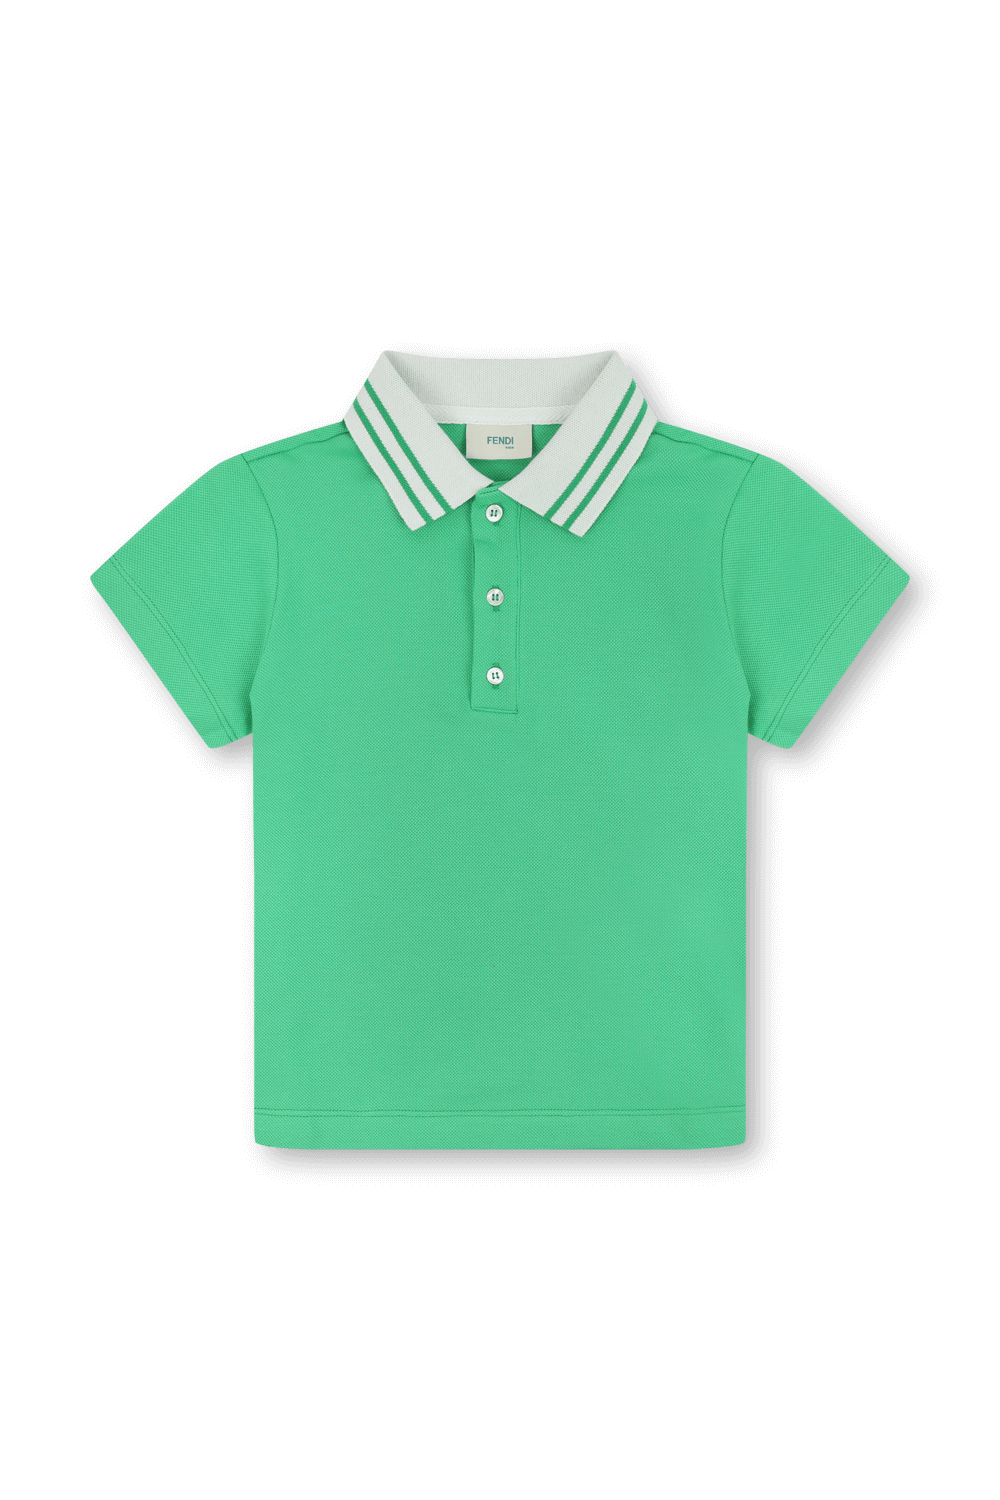 גילאי 3-7 חולצת פולו ירוקה עם צווארון לבן FENDI KIDS